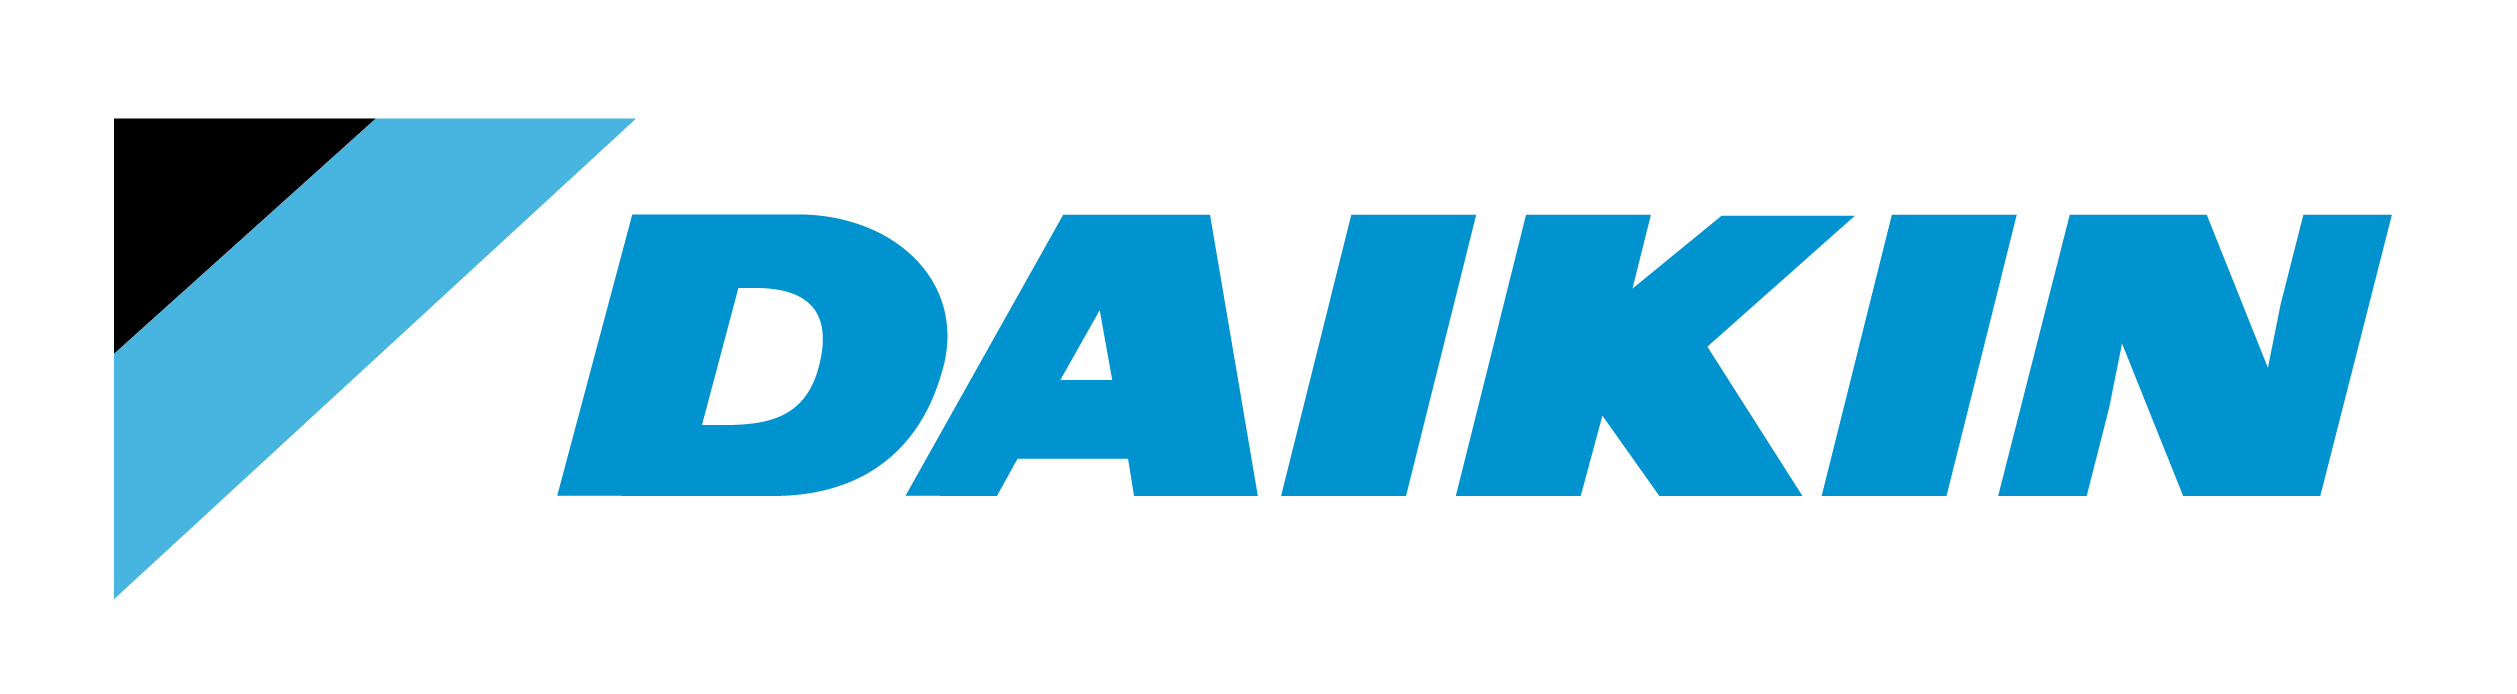 daikin_logo (1)